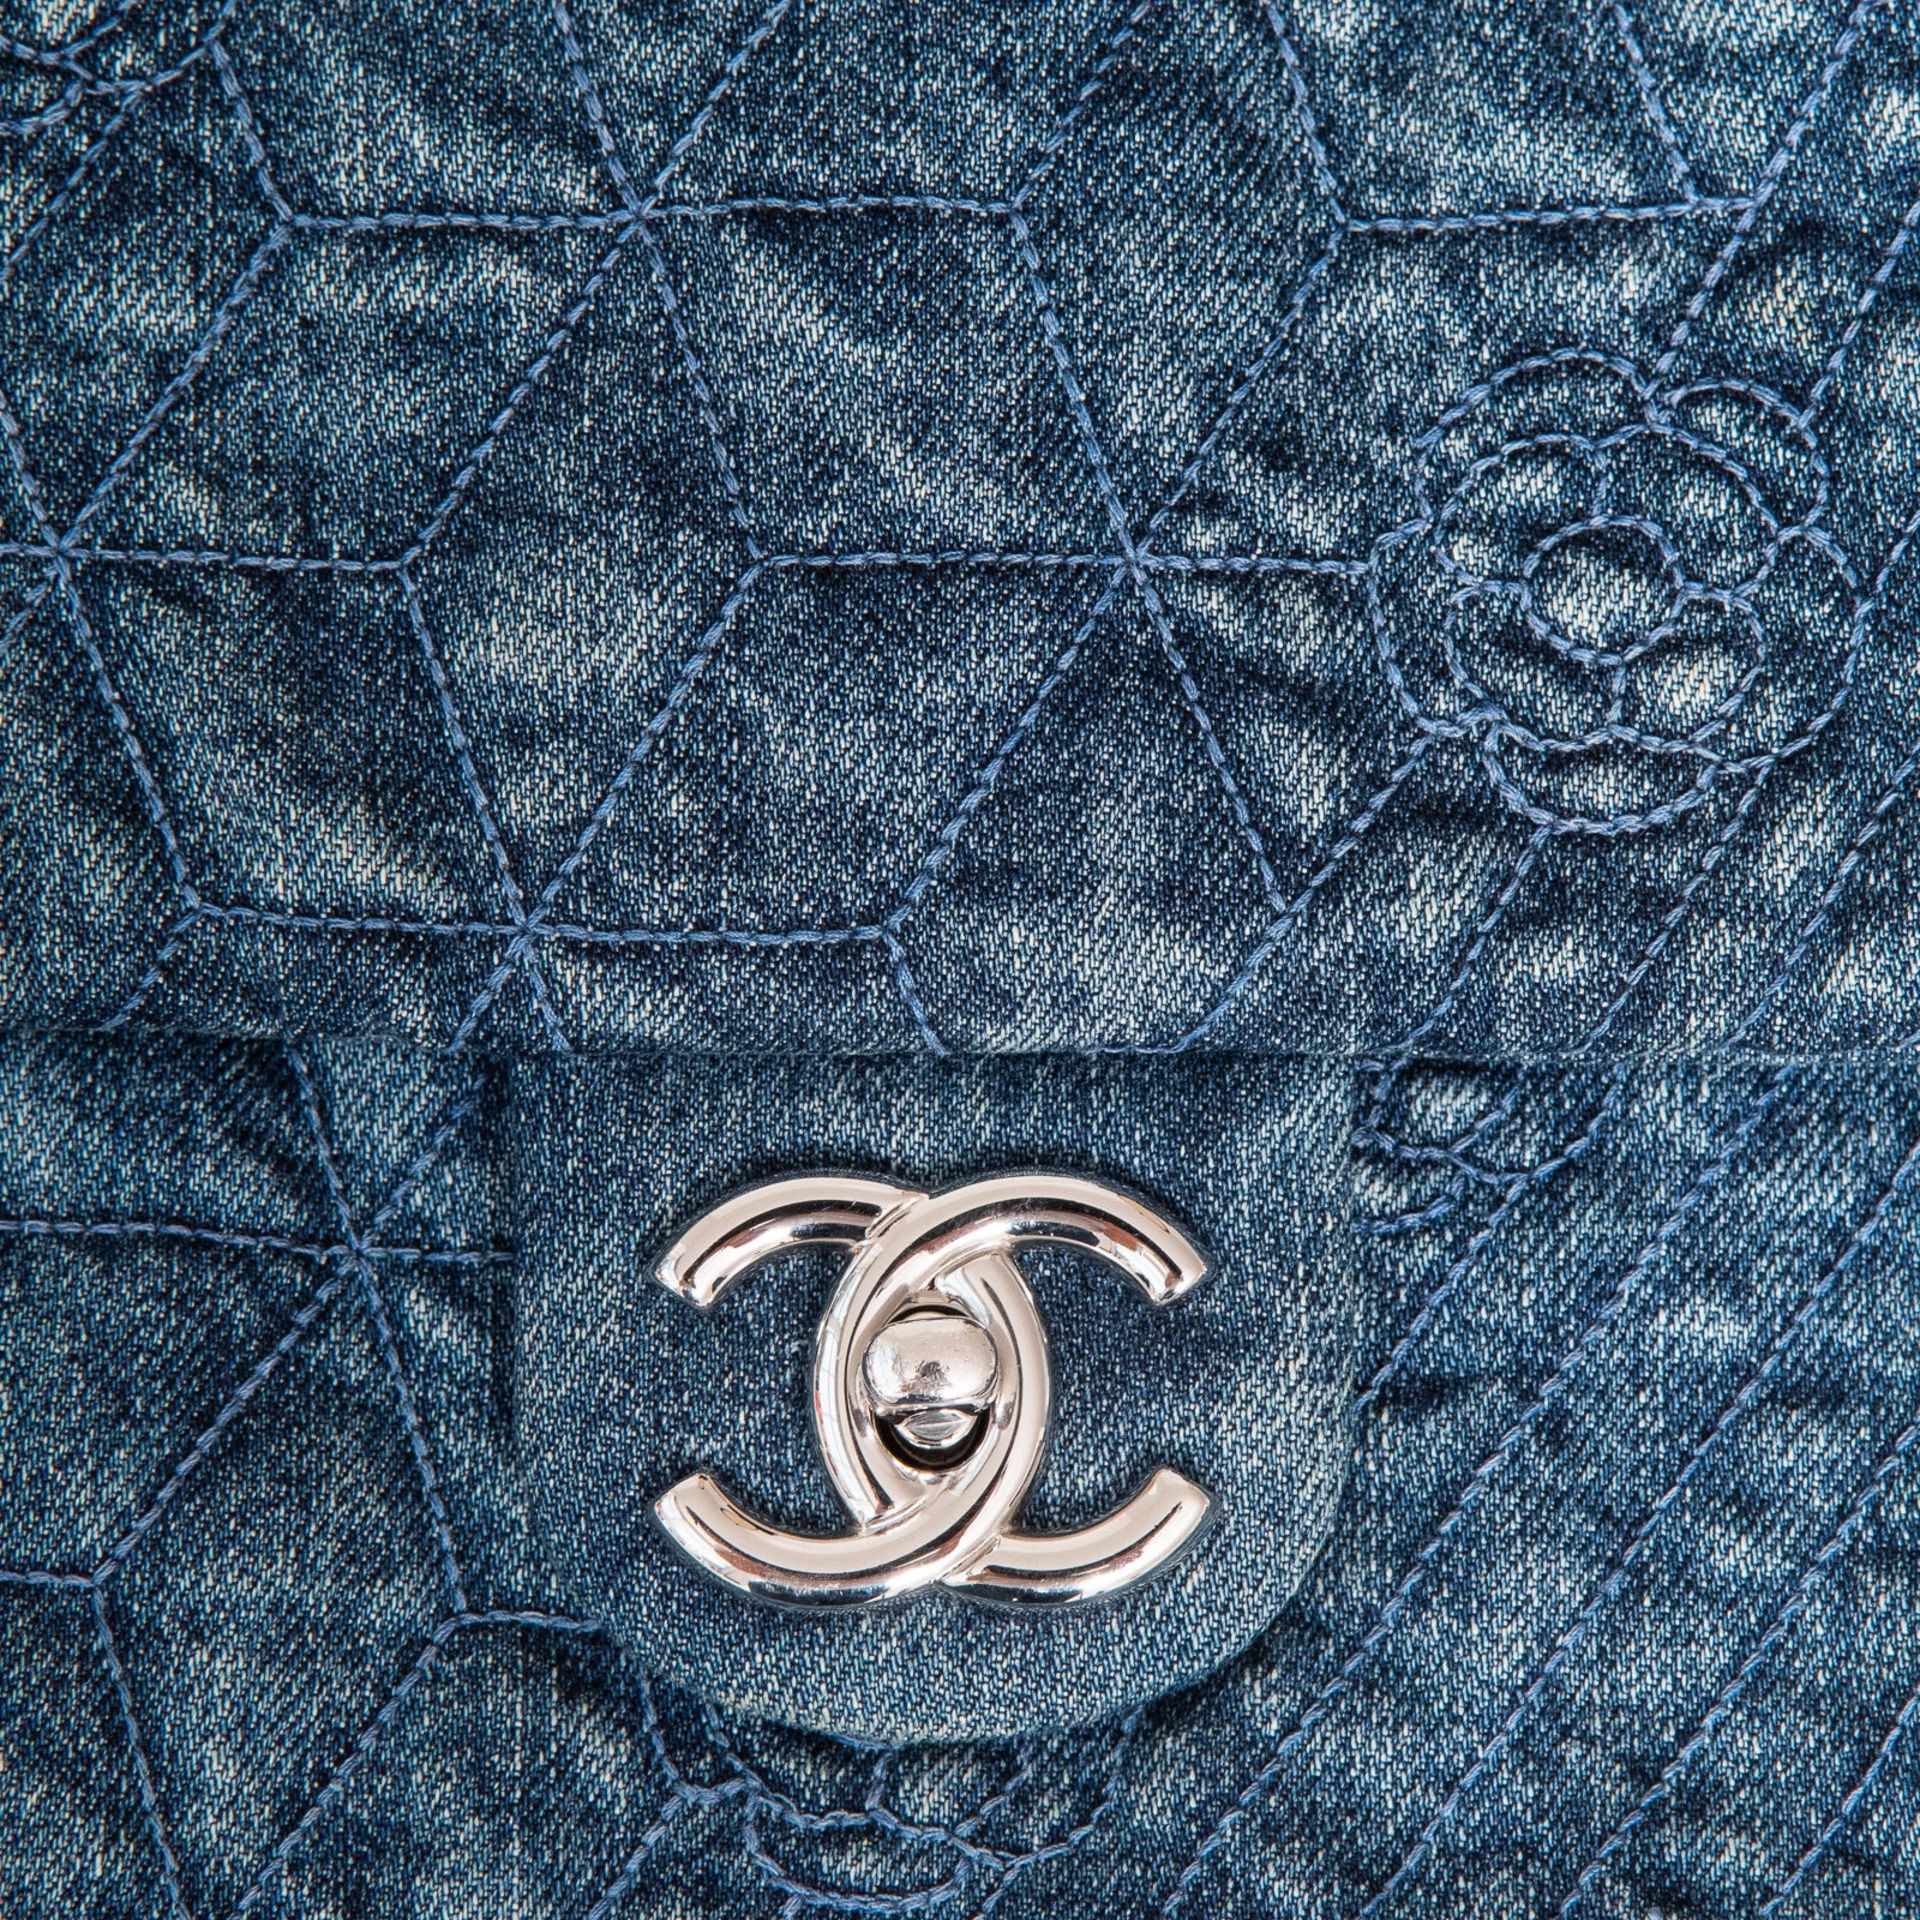 Chanel Denim Blue Camelia Flap Bag - Image 2 of 11